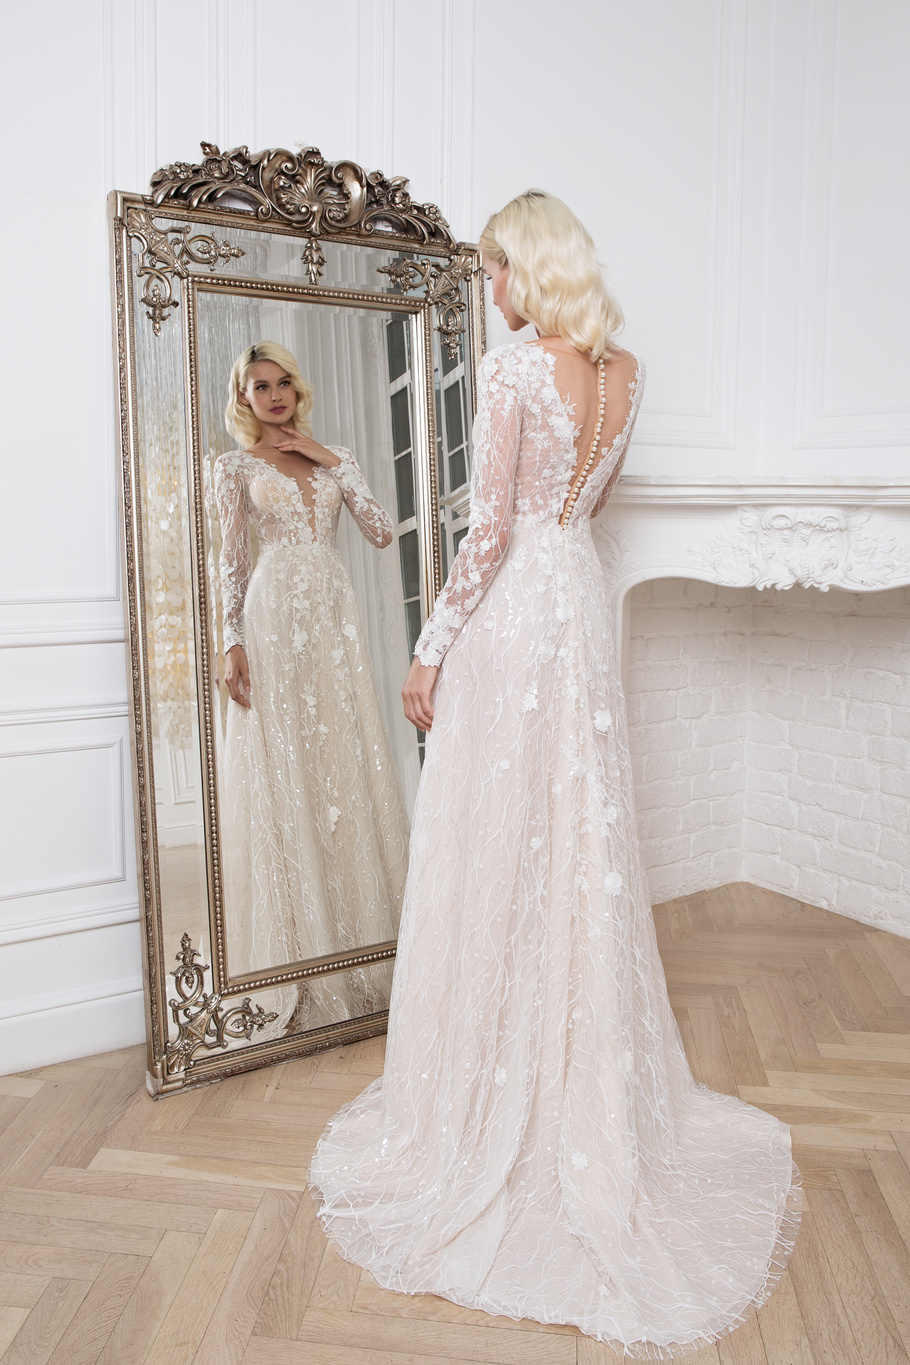 Купить свадебное платье «Альмерия» Мэрри Марк из коллекции 2020 года в Волгограде